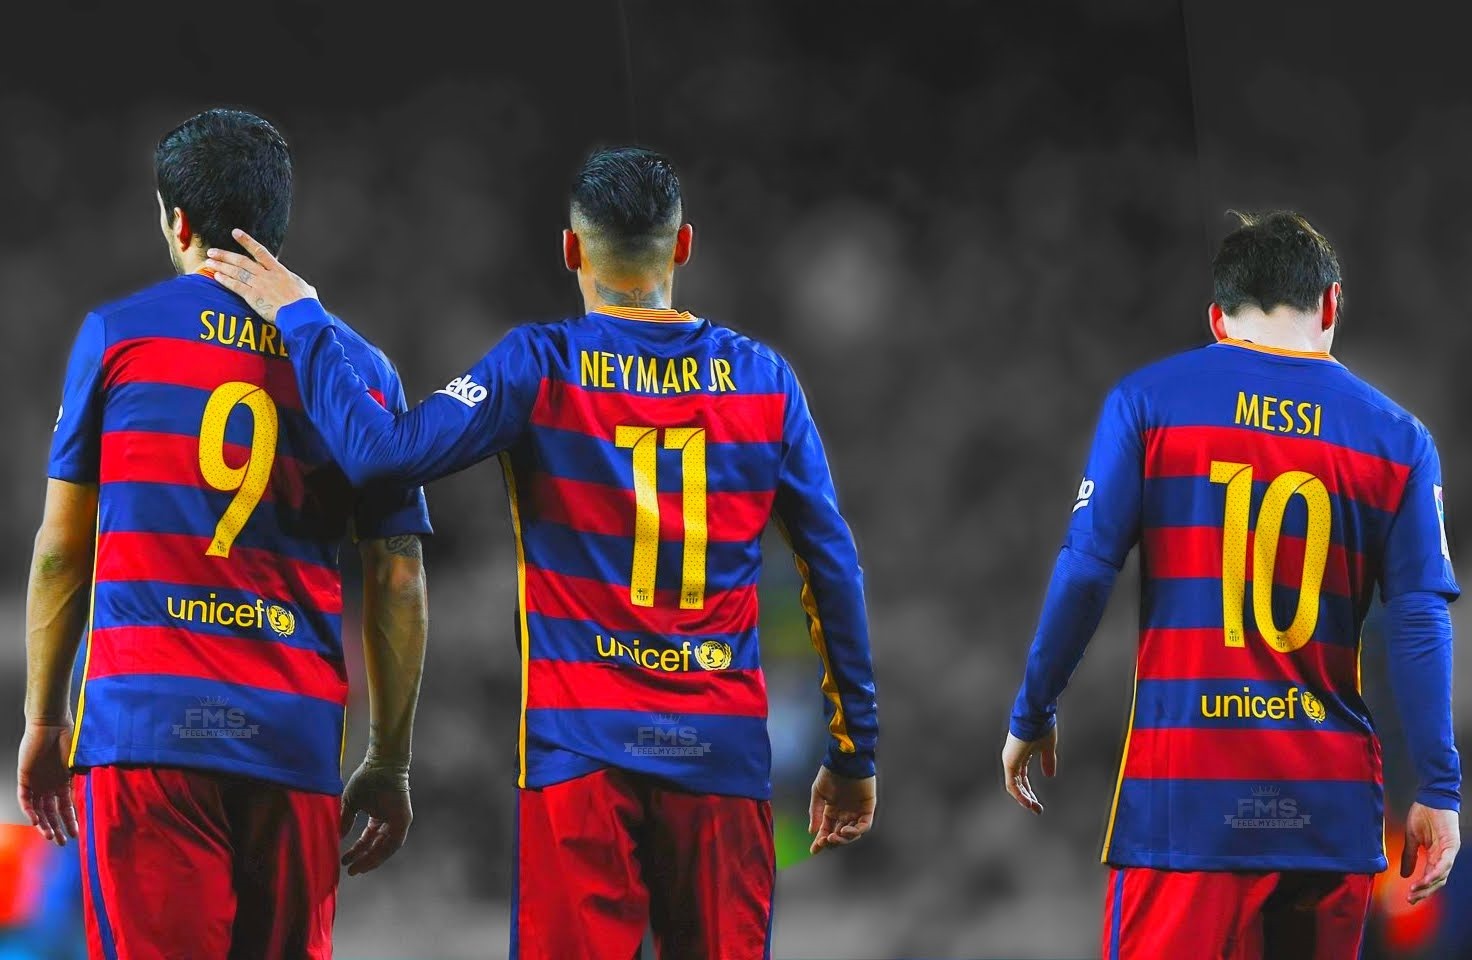 Messi-Suarez-Neymar